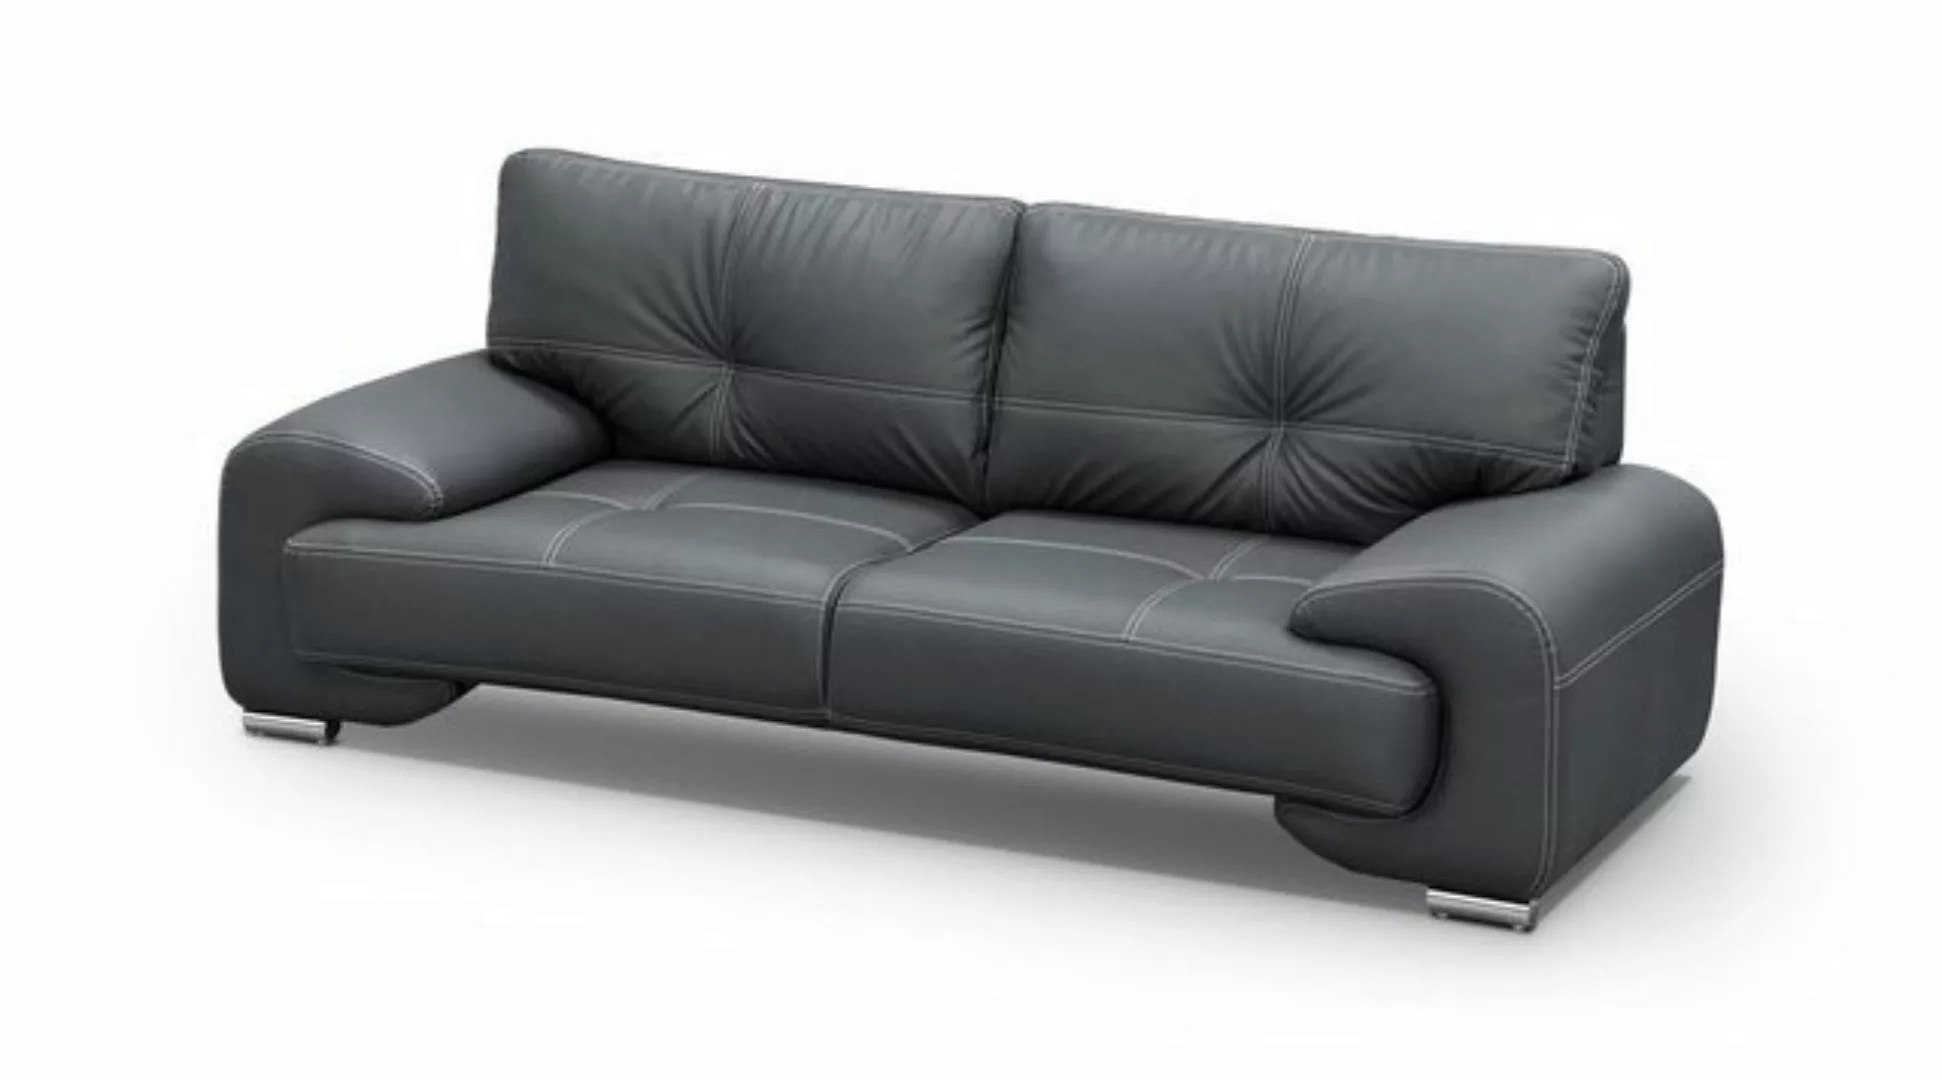 Beautysofa Sofa Dreisitzer Sofa Couch OMEGA Neu, Die Lieferung gilt für die günstig online kaufen